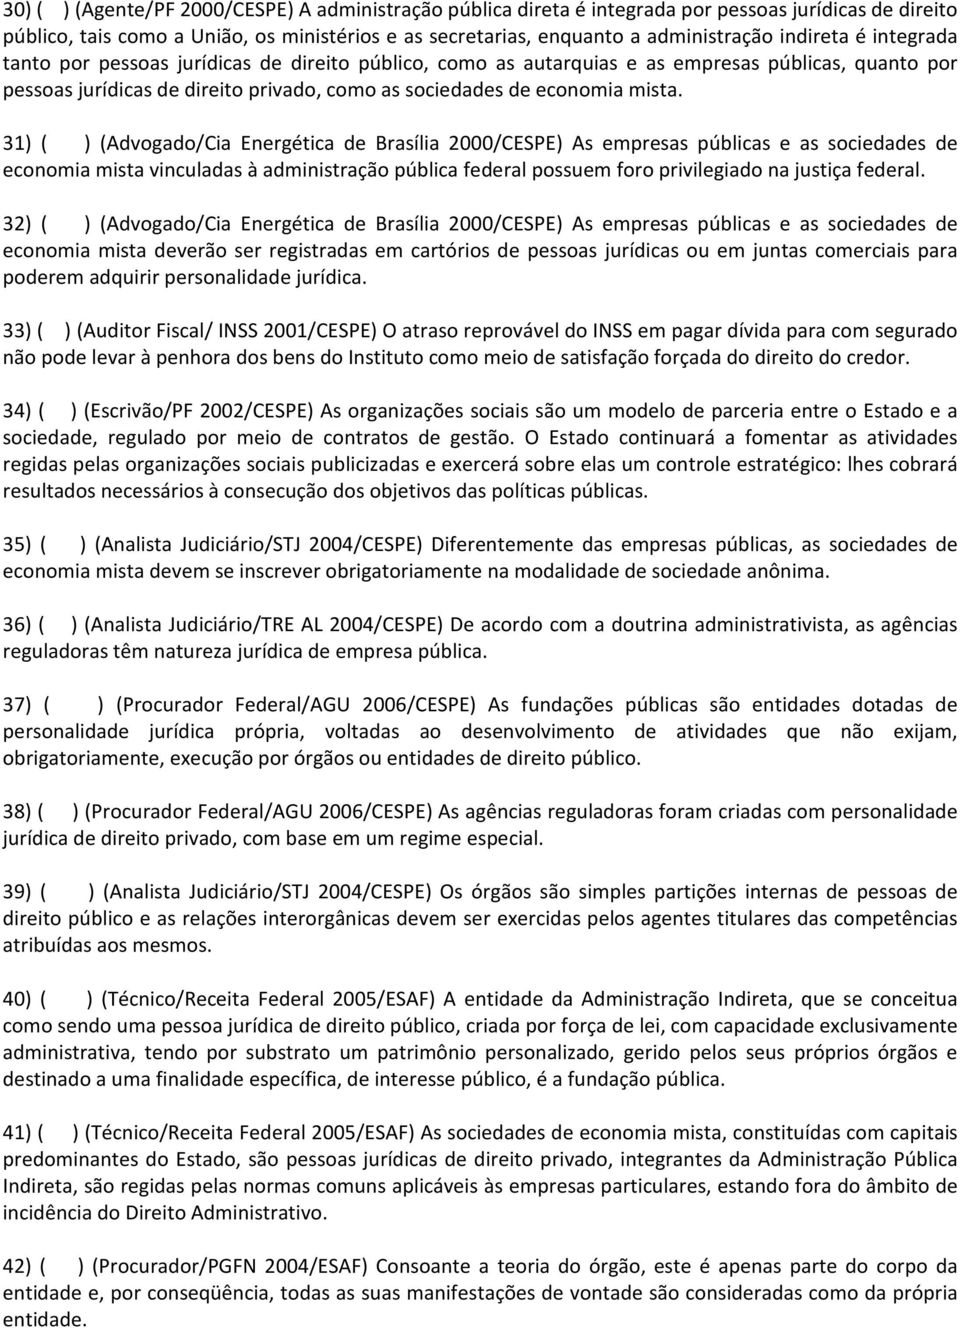 31) ( ) (Advogado/Cia Energética de Brasília 2000/CESPE) As empresas públicas e as sociedades de economia mista vinculadas à administração pública federal possuem foro privilegiado na justiça federal.